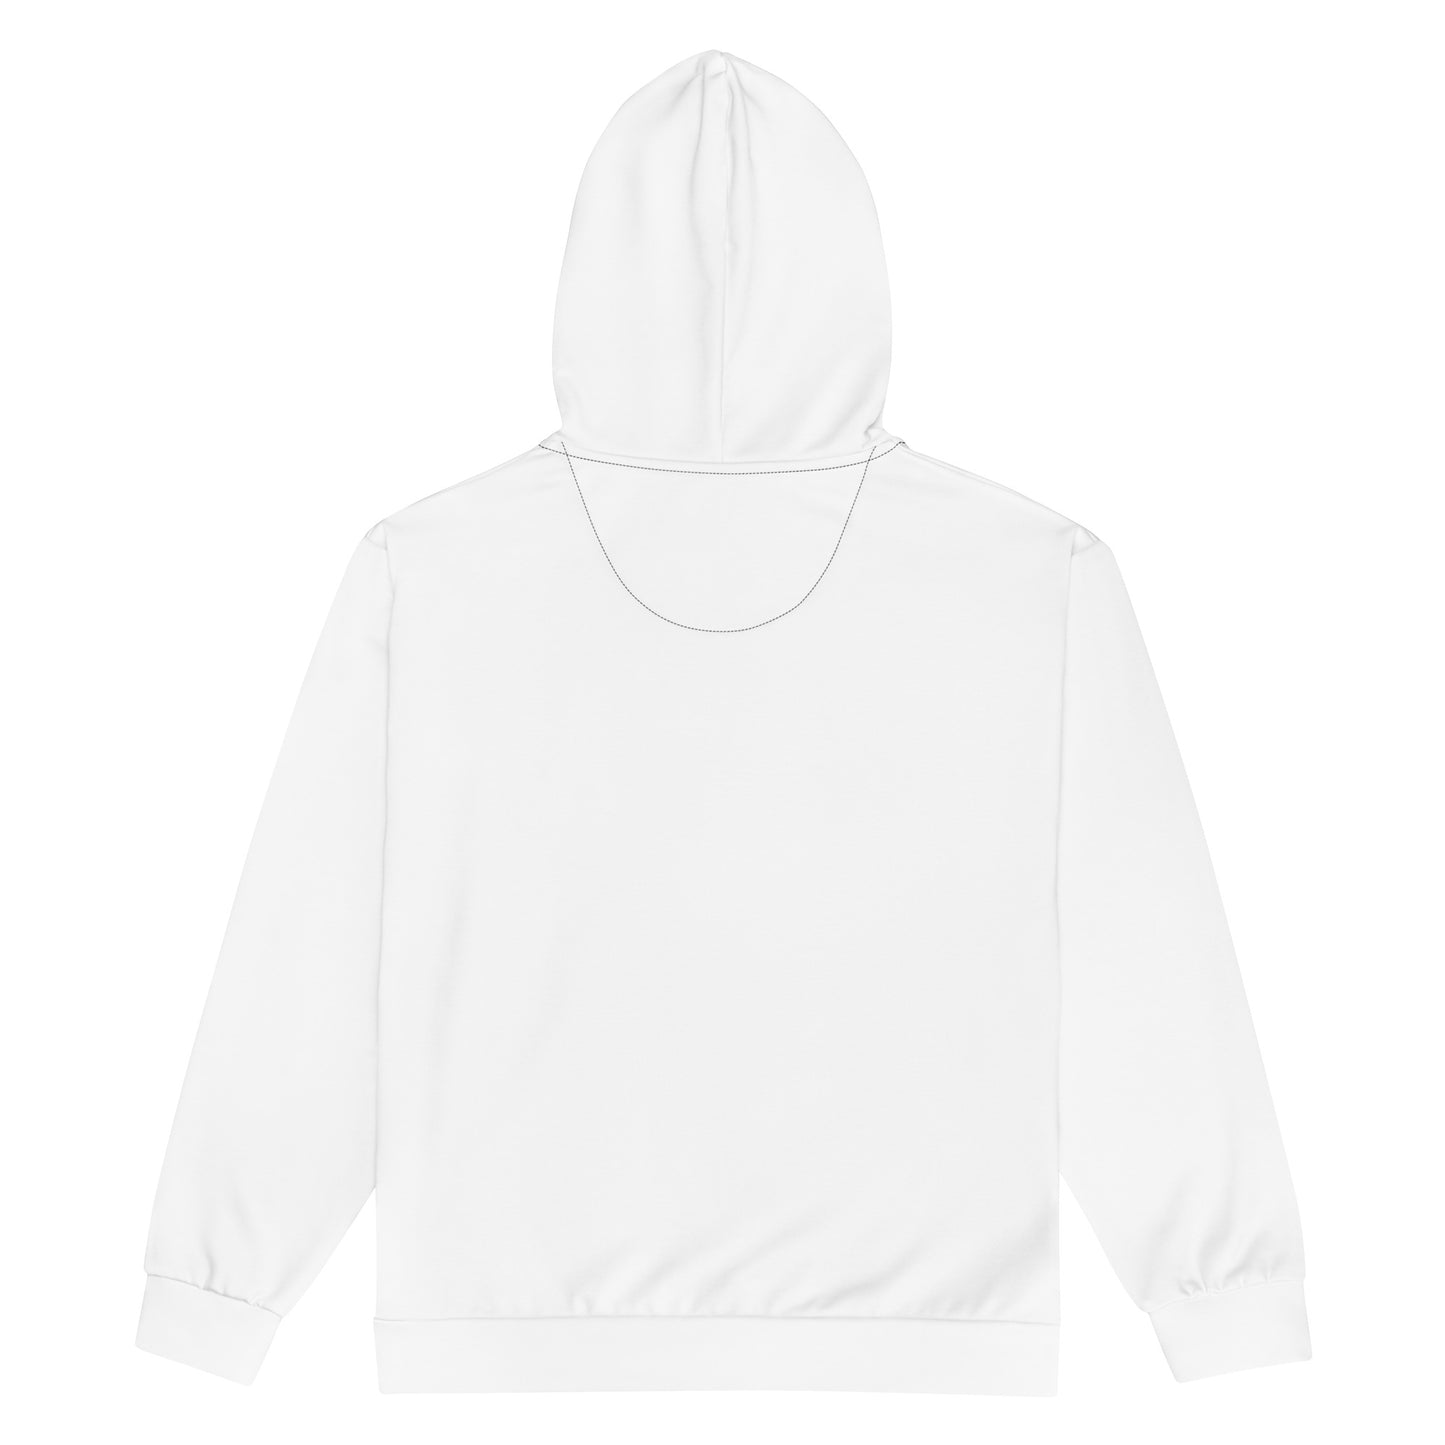 FAFOK9™ Unisex zip hoodie